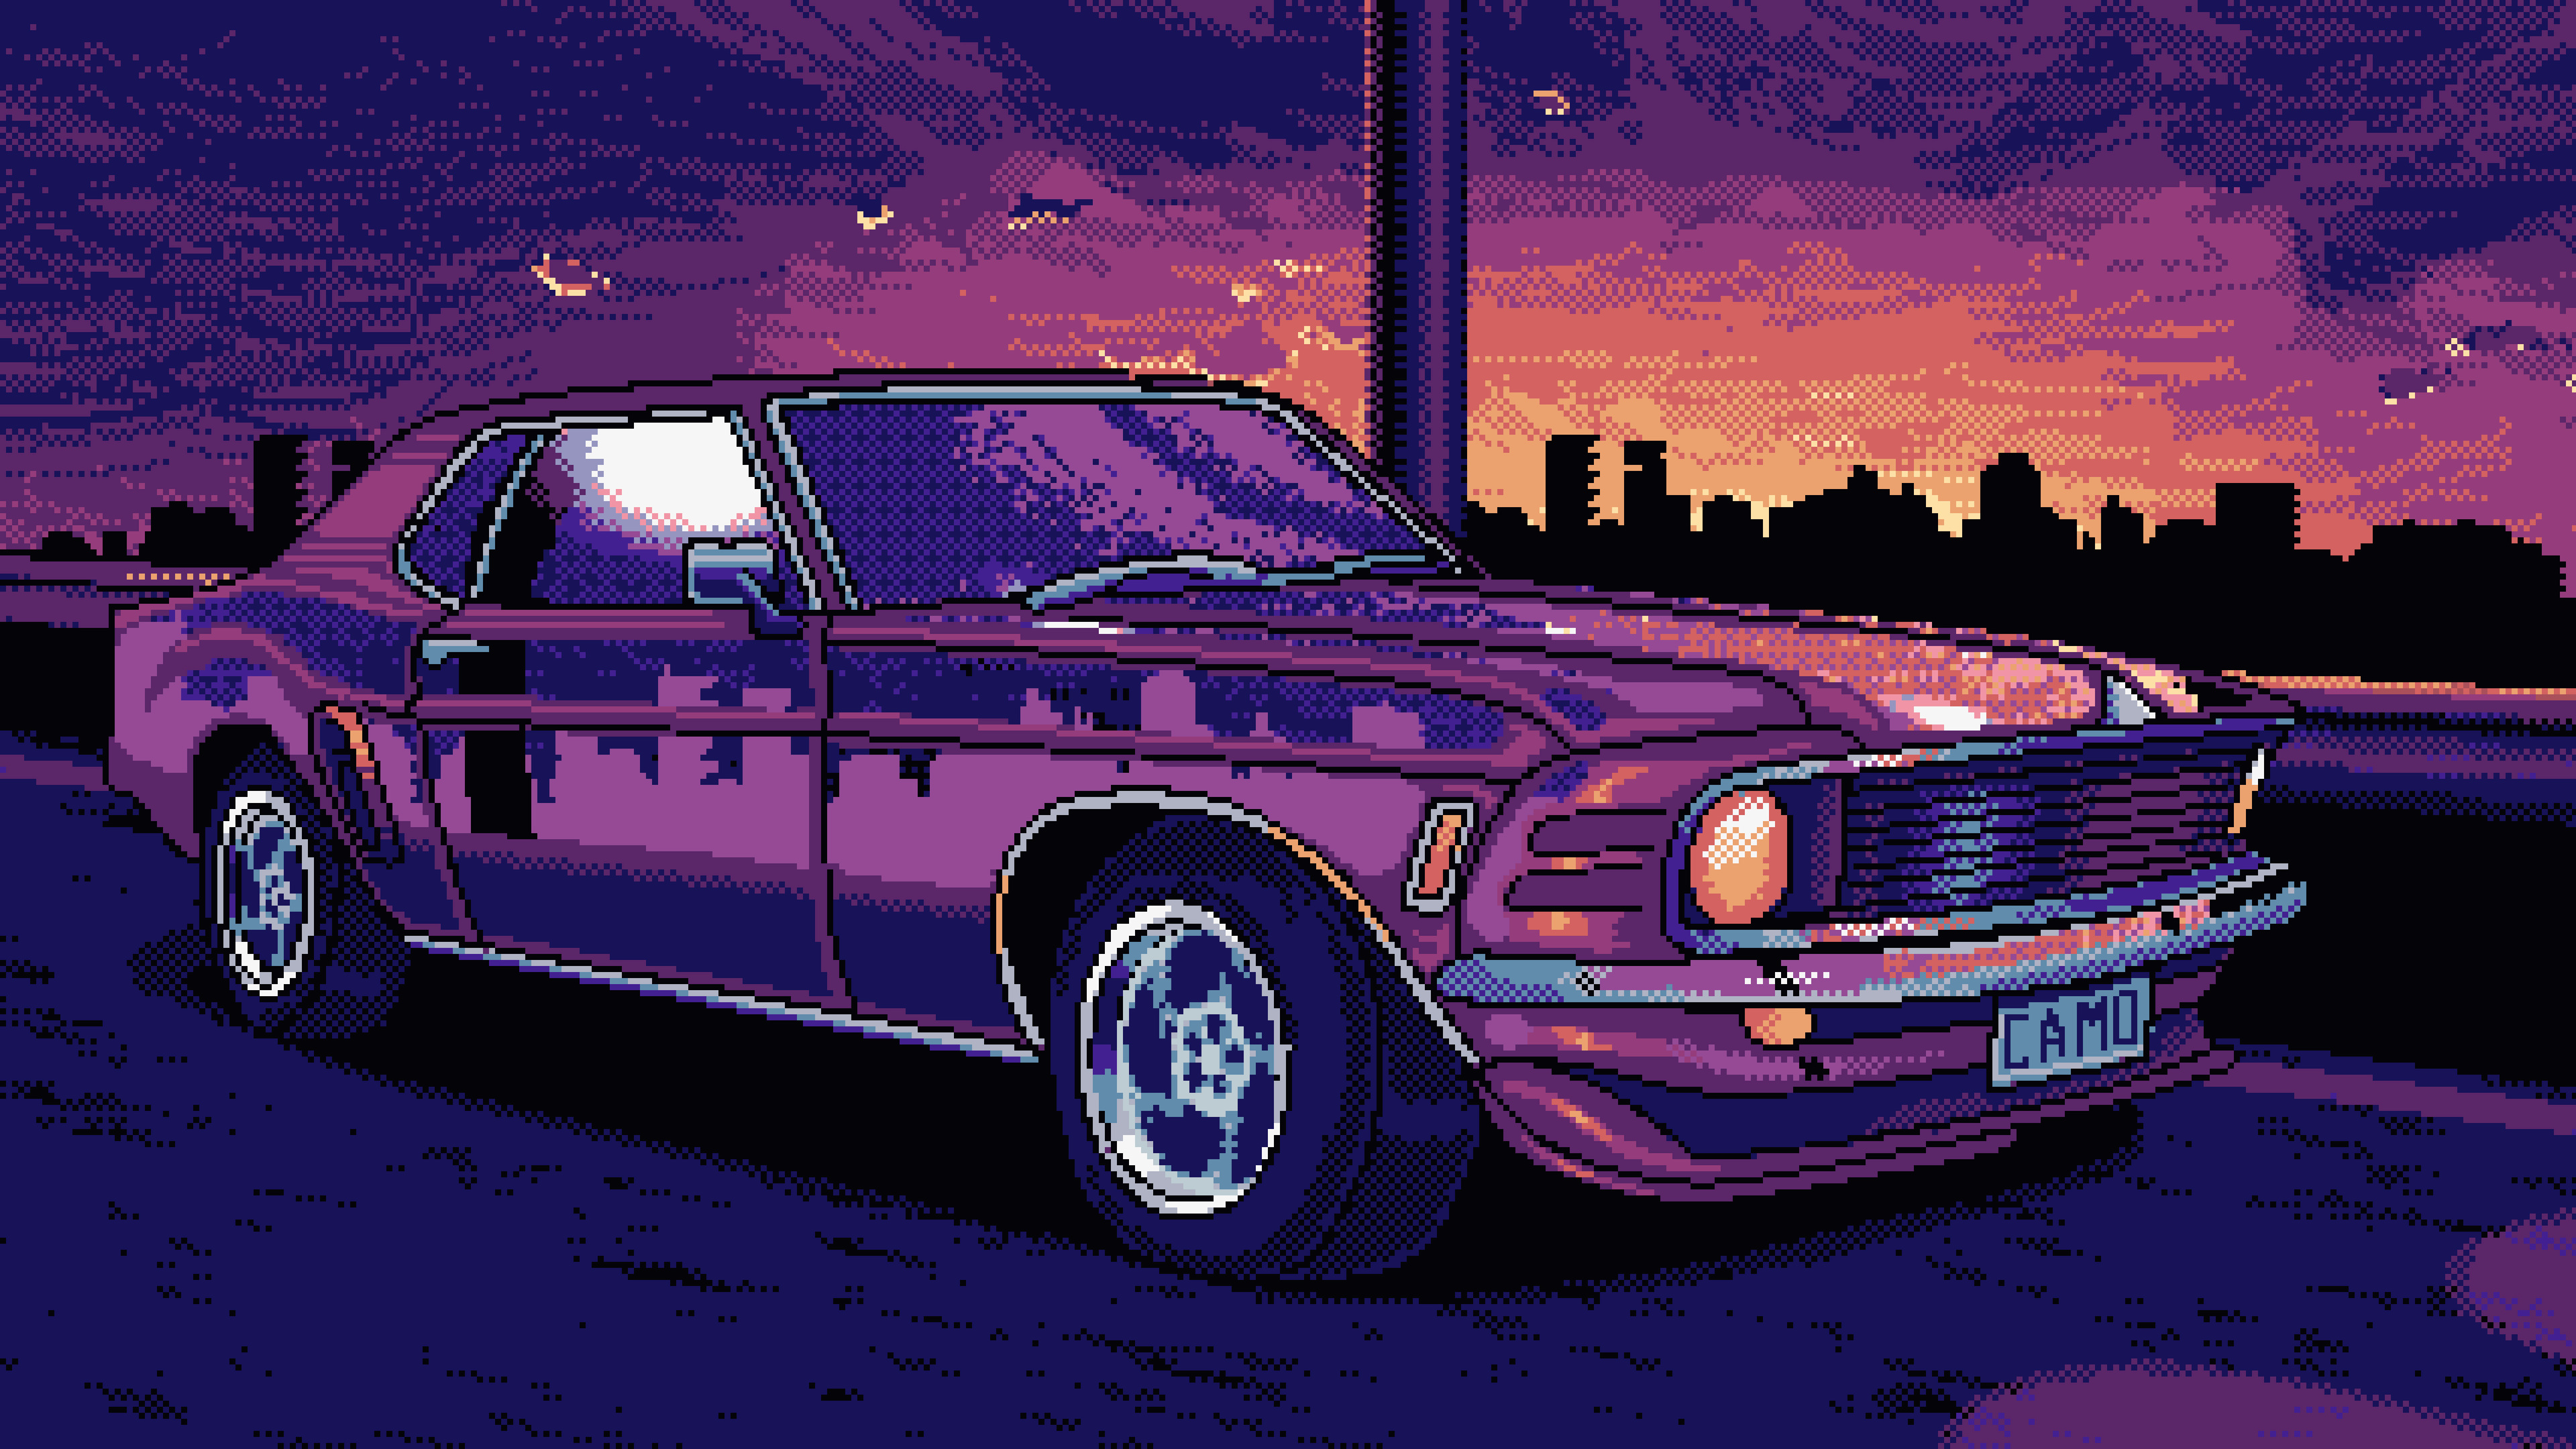 Nếu bạn yêu thích xe cổ điển, bạn không thể bỏ qua chiếc Mustang 16 bit độ phân giải cao này. Trải nghiệm hình ảnh với độ chi tiết cao và những đường nét cổ điển tinh tế, đầy cuốn hút. Hãy xem hình ảnh này và cảm nhận sự đẳng cấp của xe cổ điển Mustang.